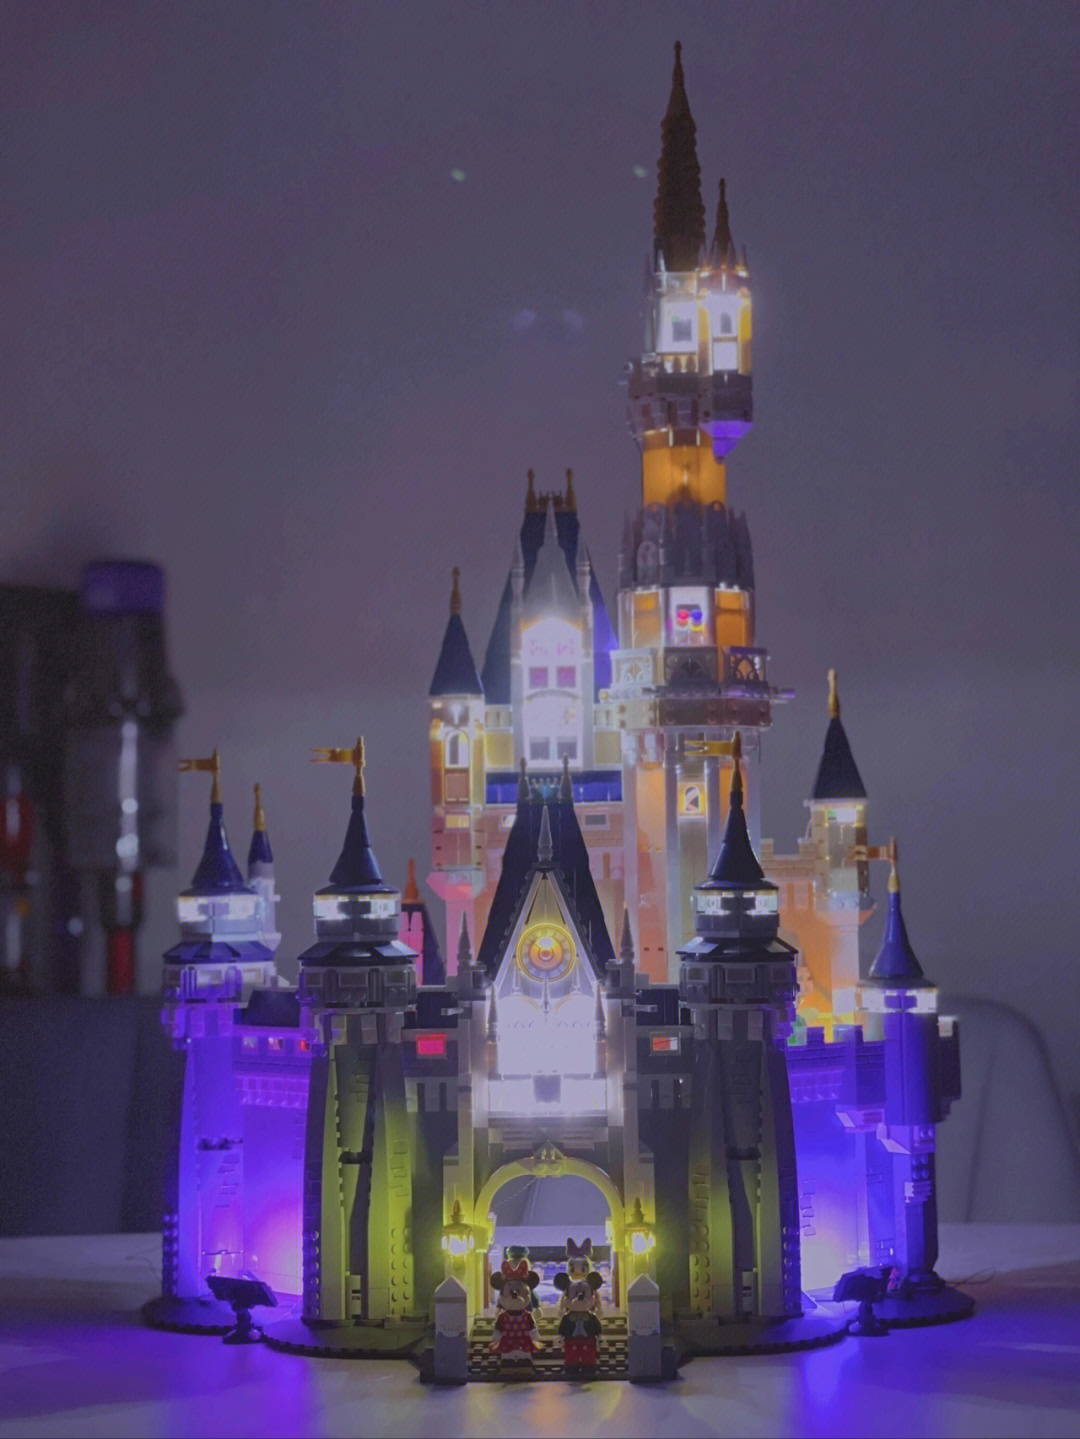 乐高迪士尼城堡灯饰灰姑娘的水晶鞋在哪